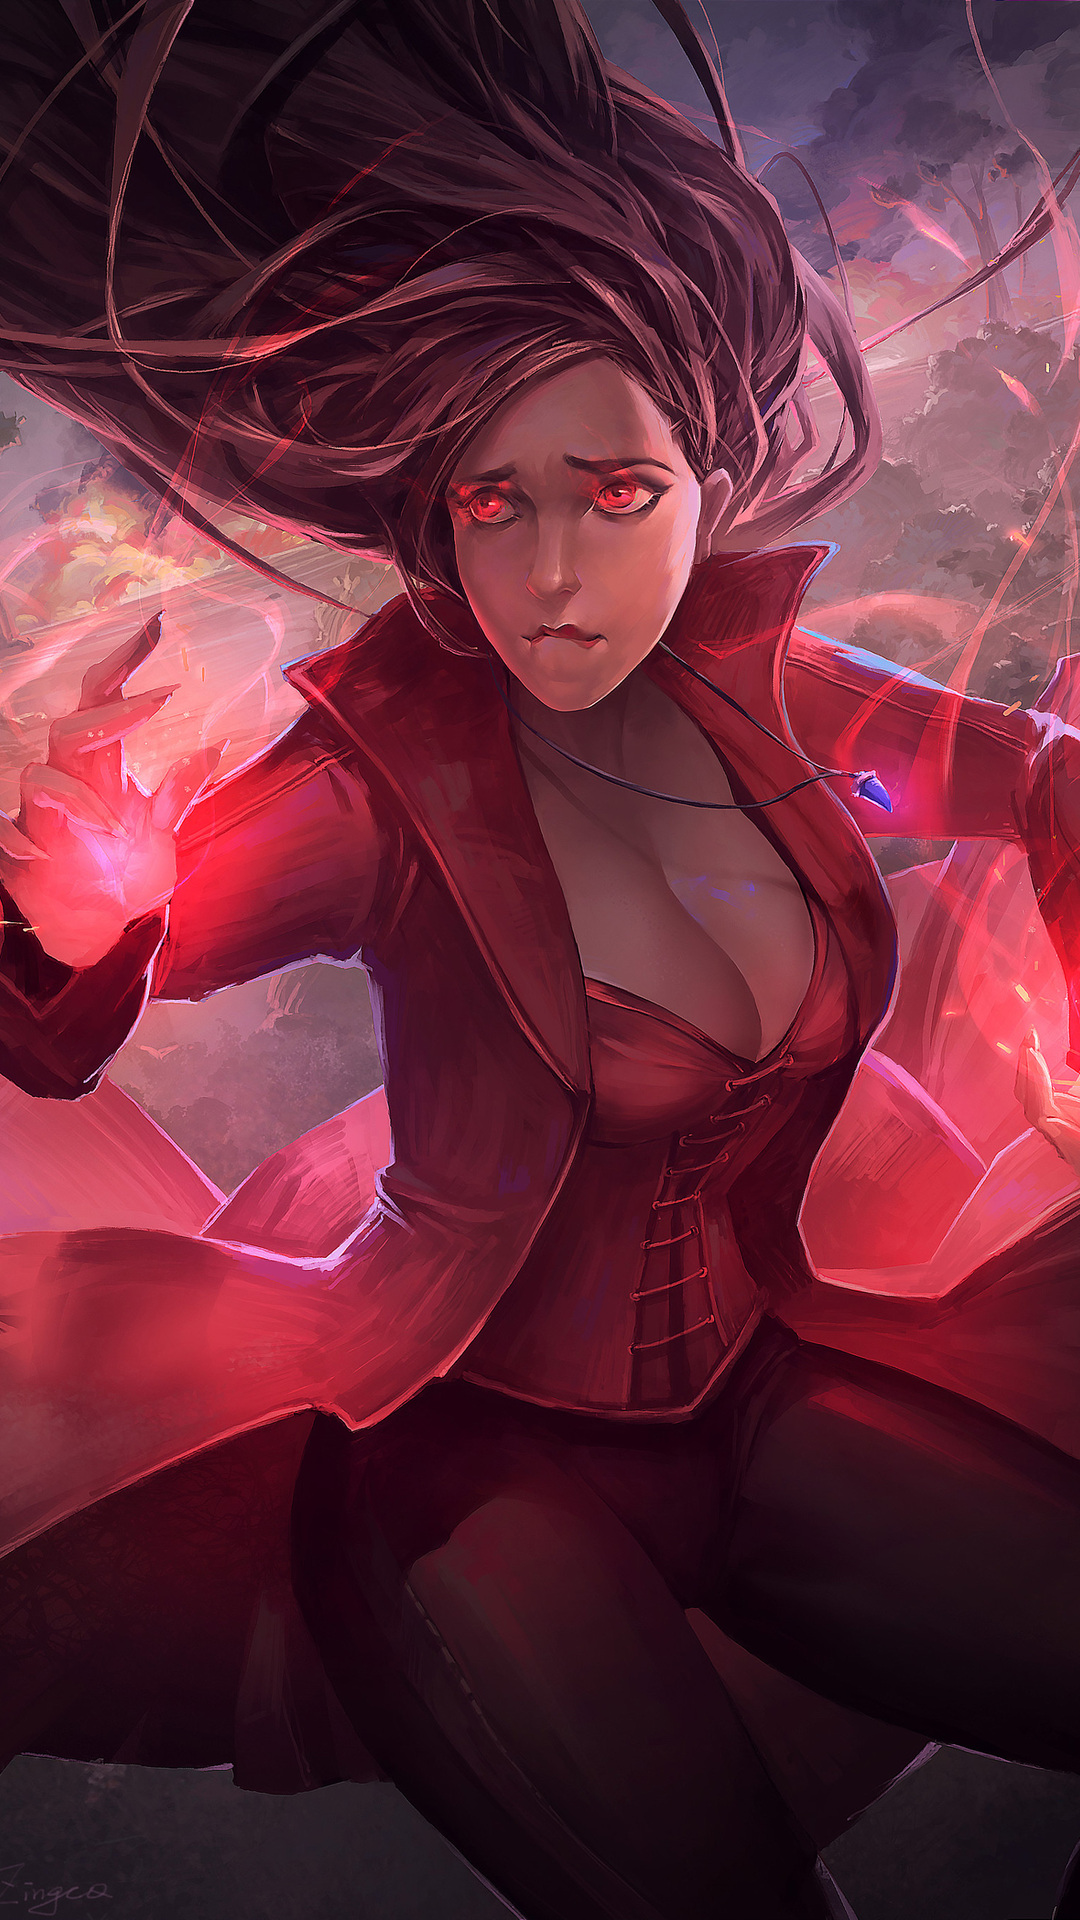 scarlet-witch-in-avengers-infinity-war-artwork-6j.jpg